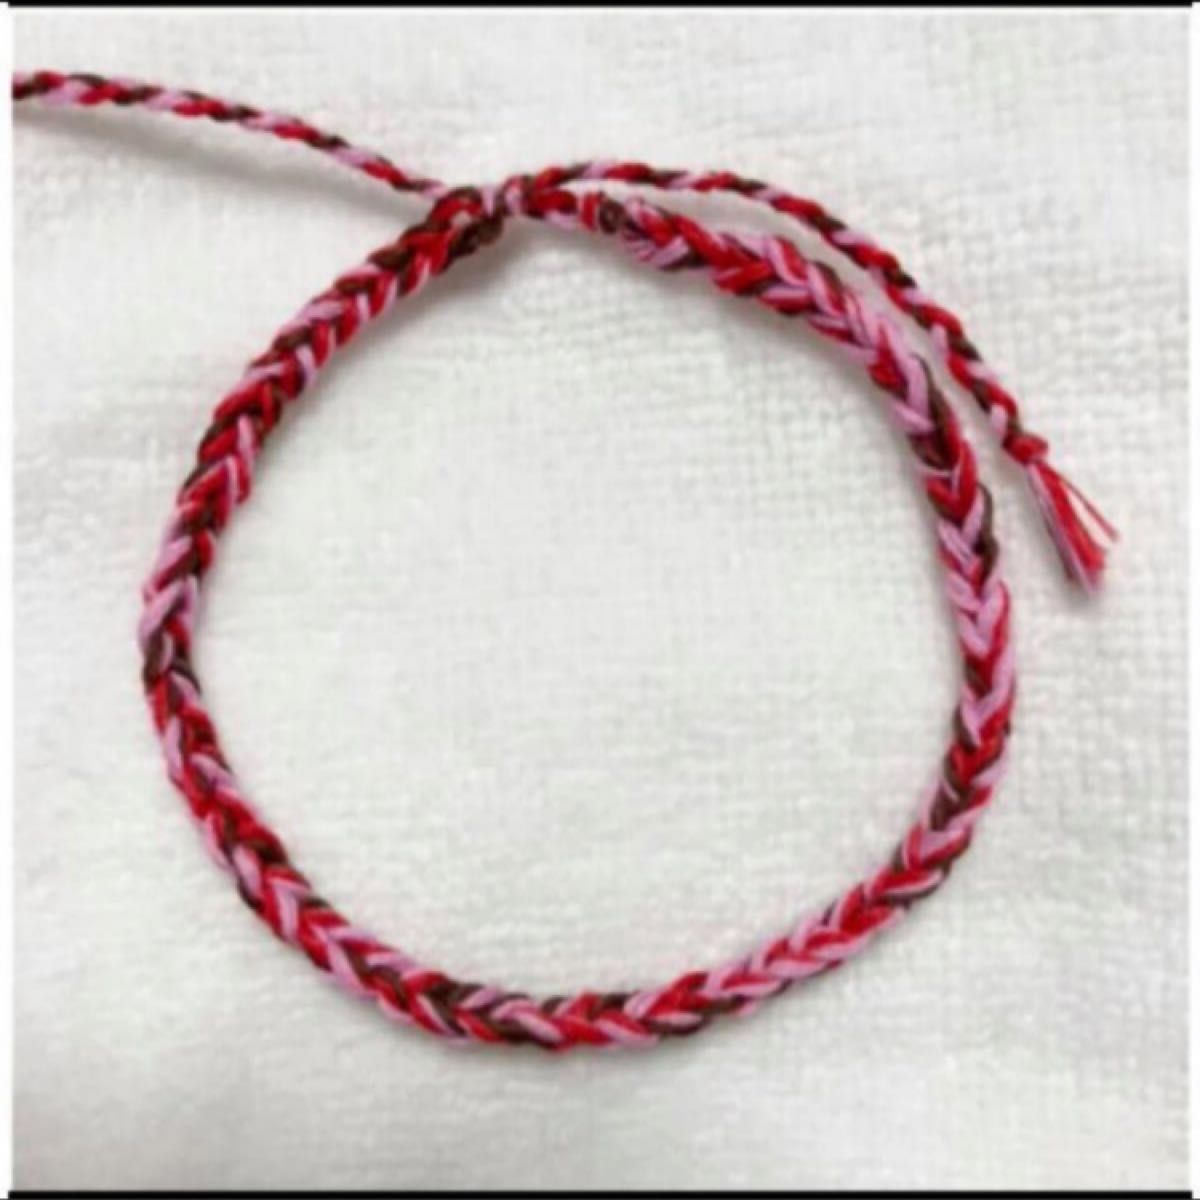 ミサンガ ブレスレット 刺繍糸 アクセサリー ハンドメイド 赤 茶色 ピンク レッド ブラウン